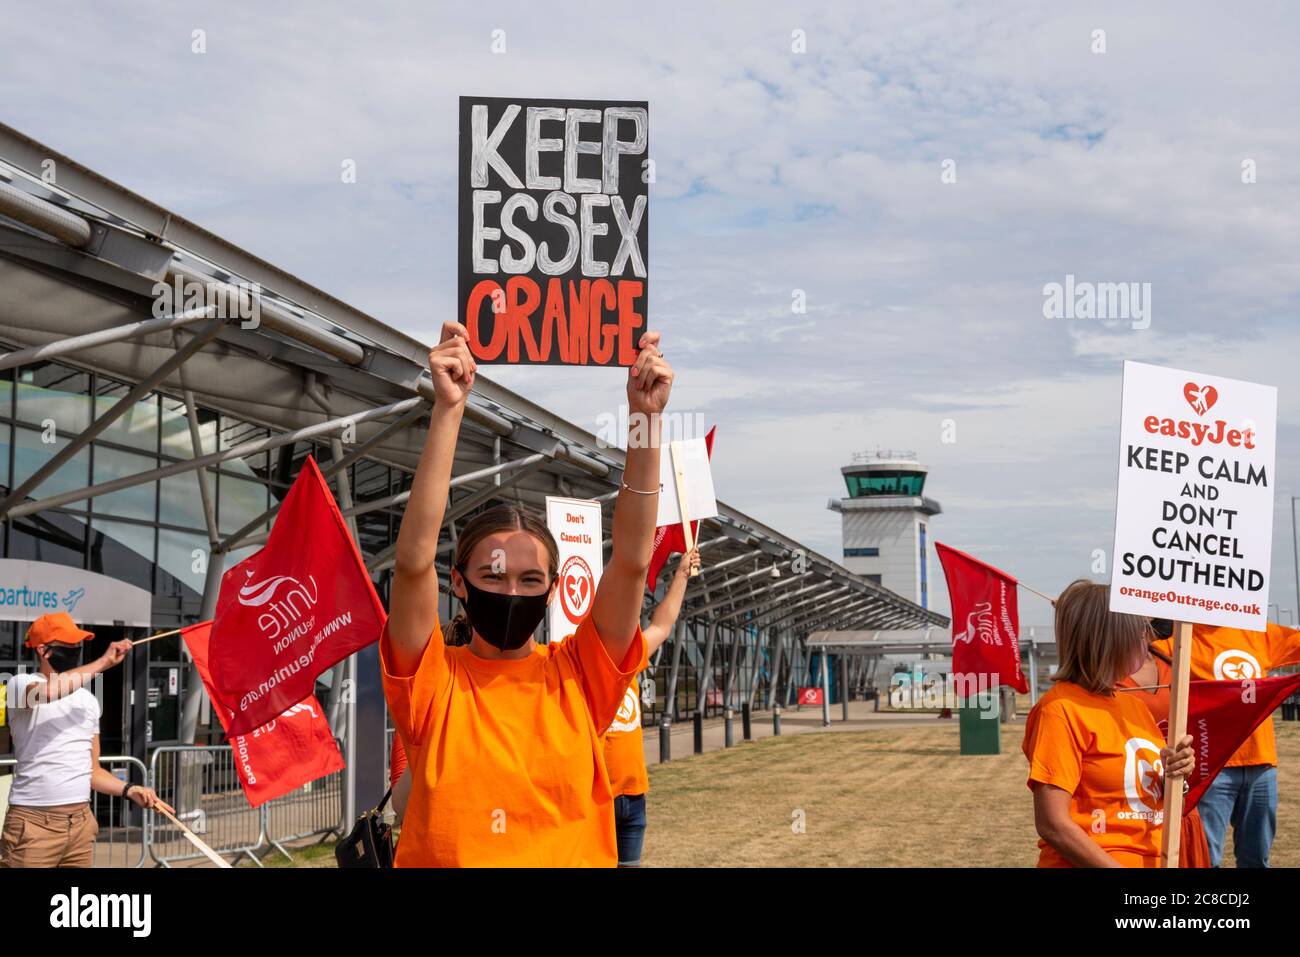 Le personnel d'easyJet protestant devant l'aéroport de Londres Southend, manifestant contre les pertes d'emplois potentielles dans la compagnie aérienne en raison de la fermeture de la base COVID-19 Banque D'Images